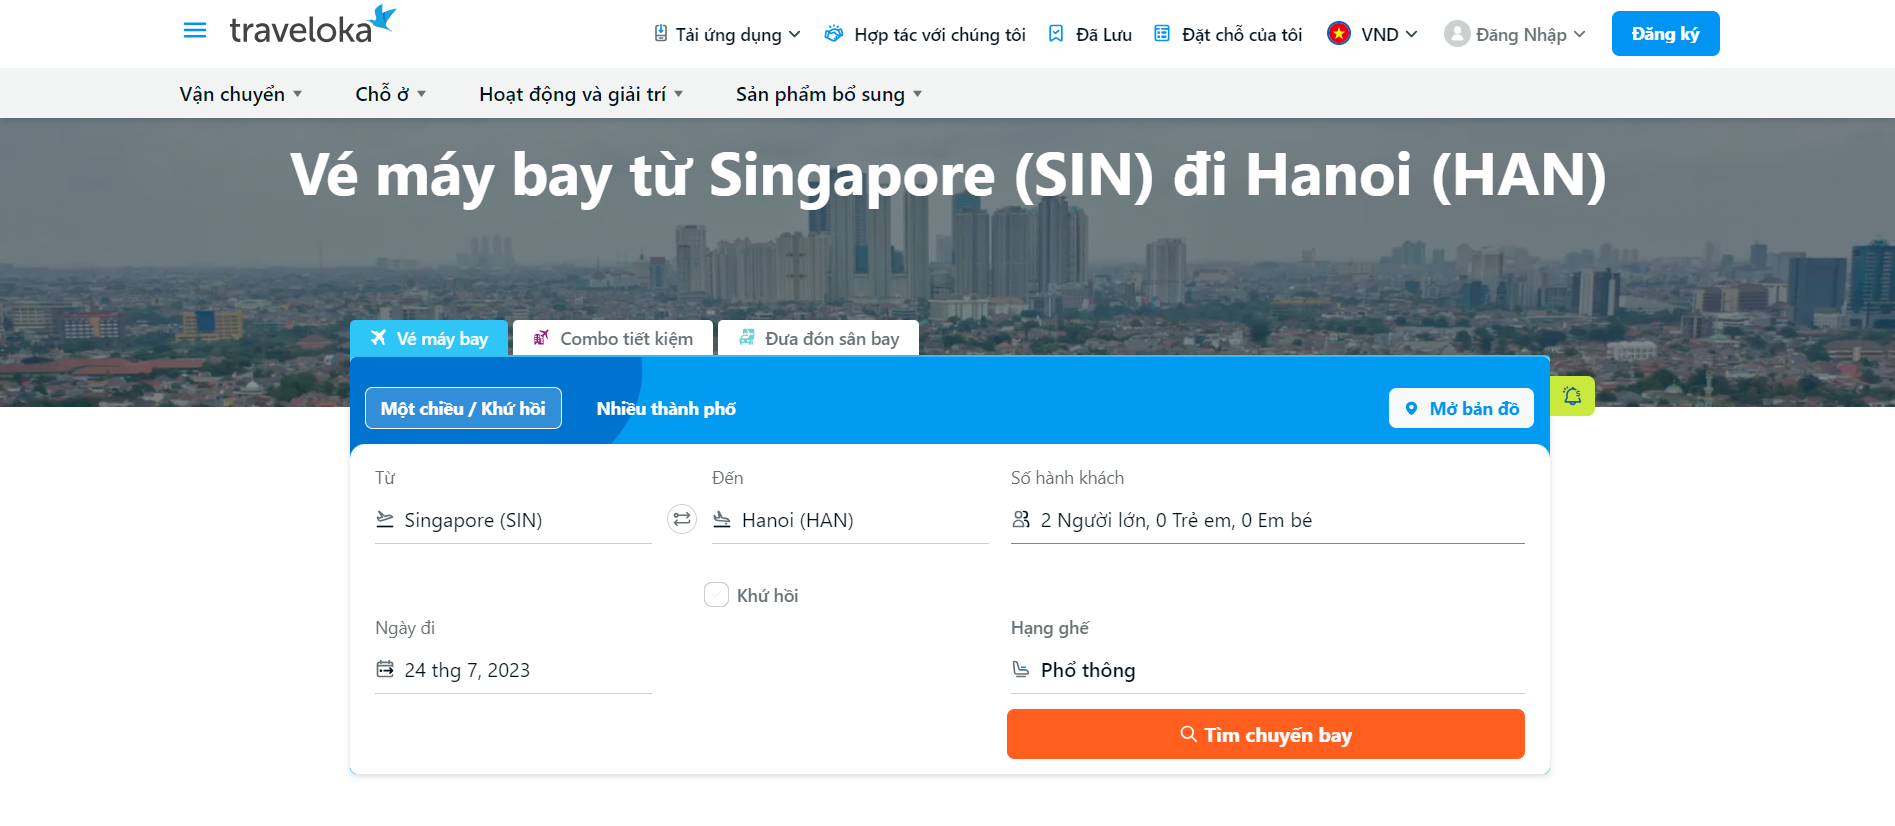 Săn vé máy bay singapore Hà Nội trên Traveloka 